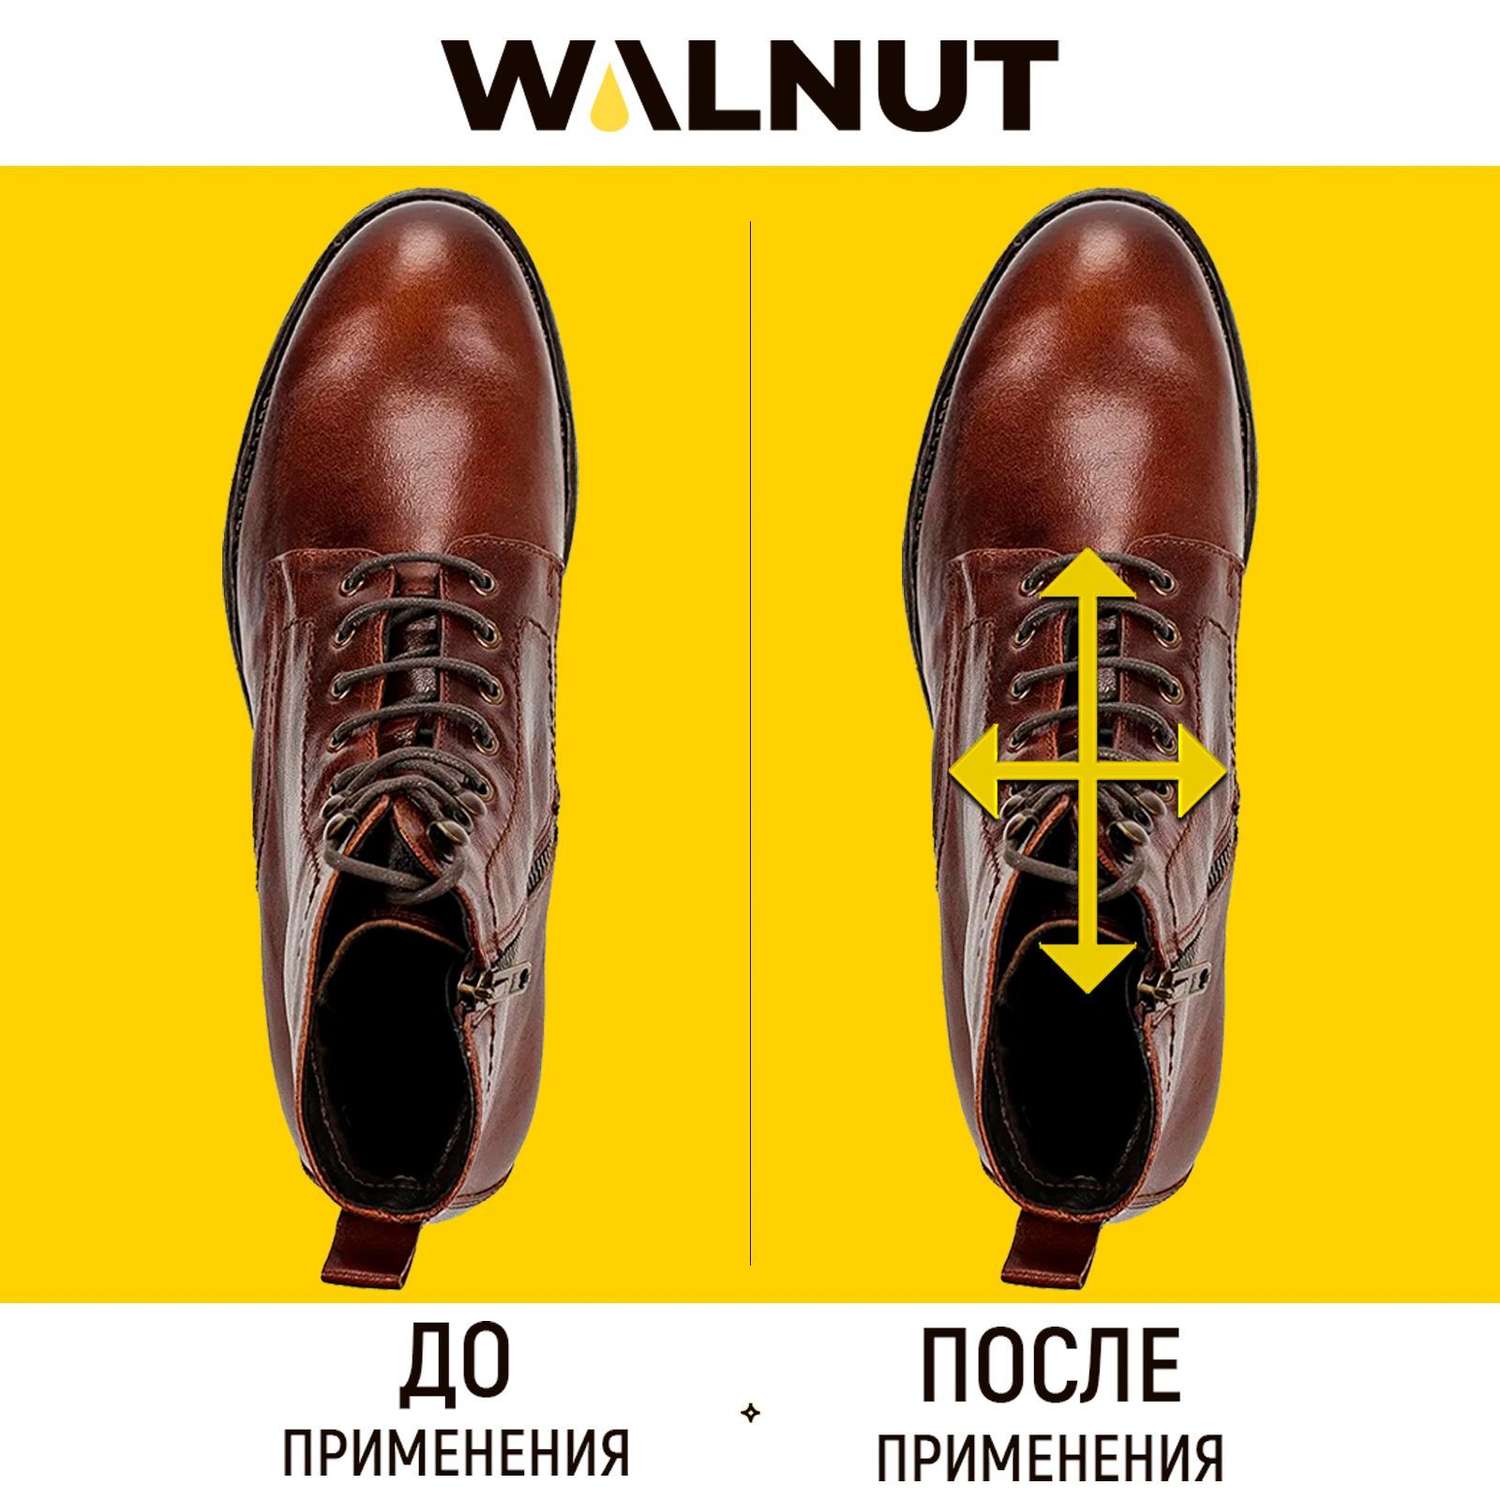 Спрей для растяжки обуви WALNUT WLN0007 WLN0007 - фото 7